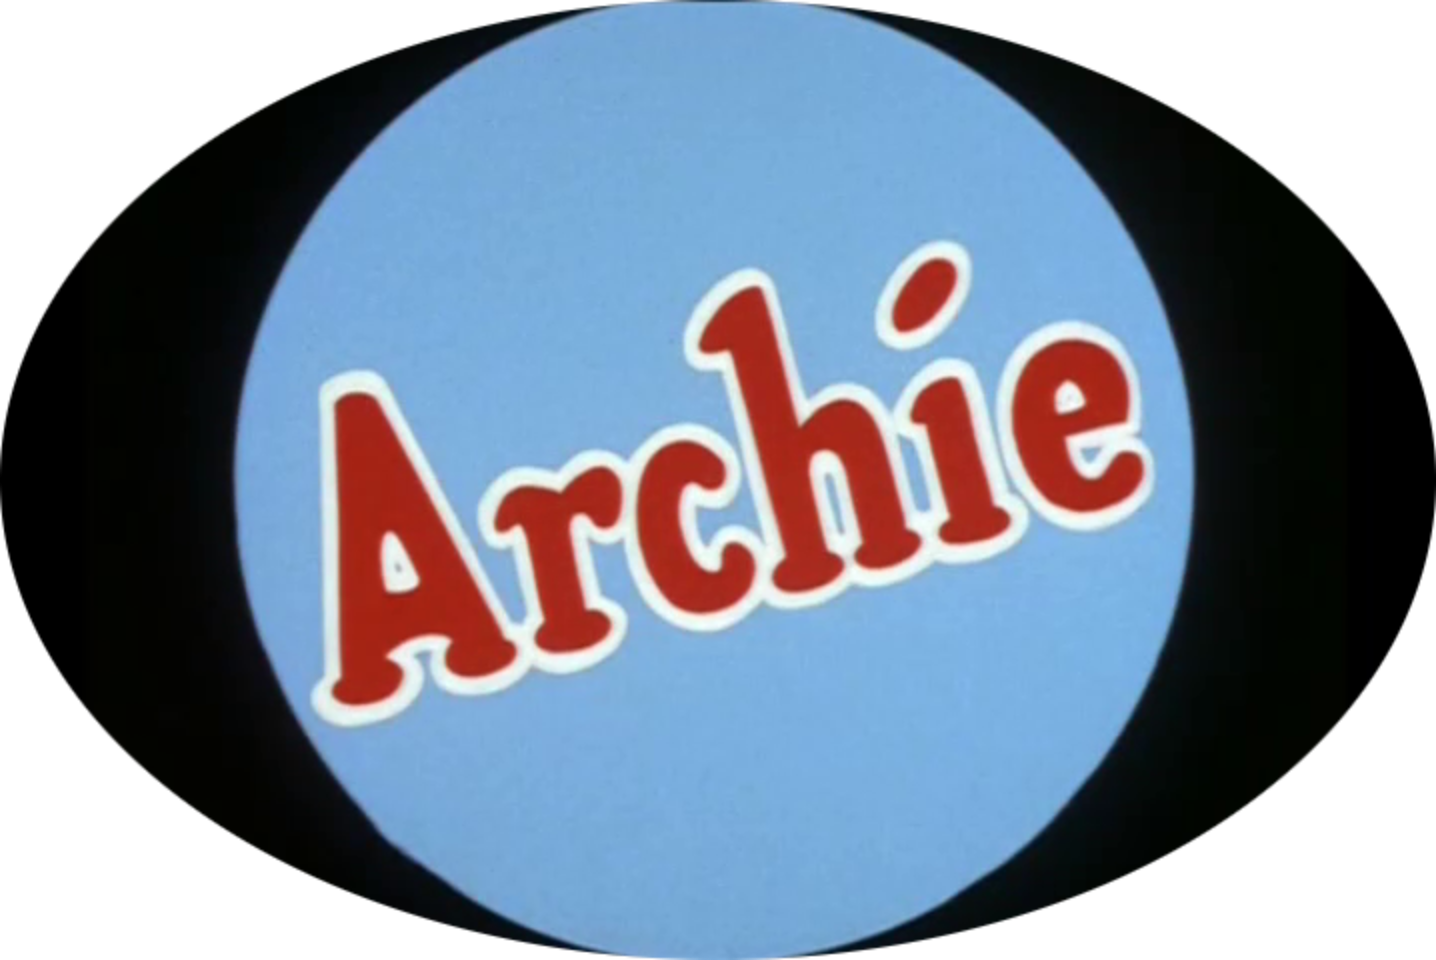 The Archie Show (2 DVDs Box Set)